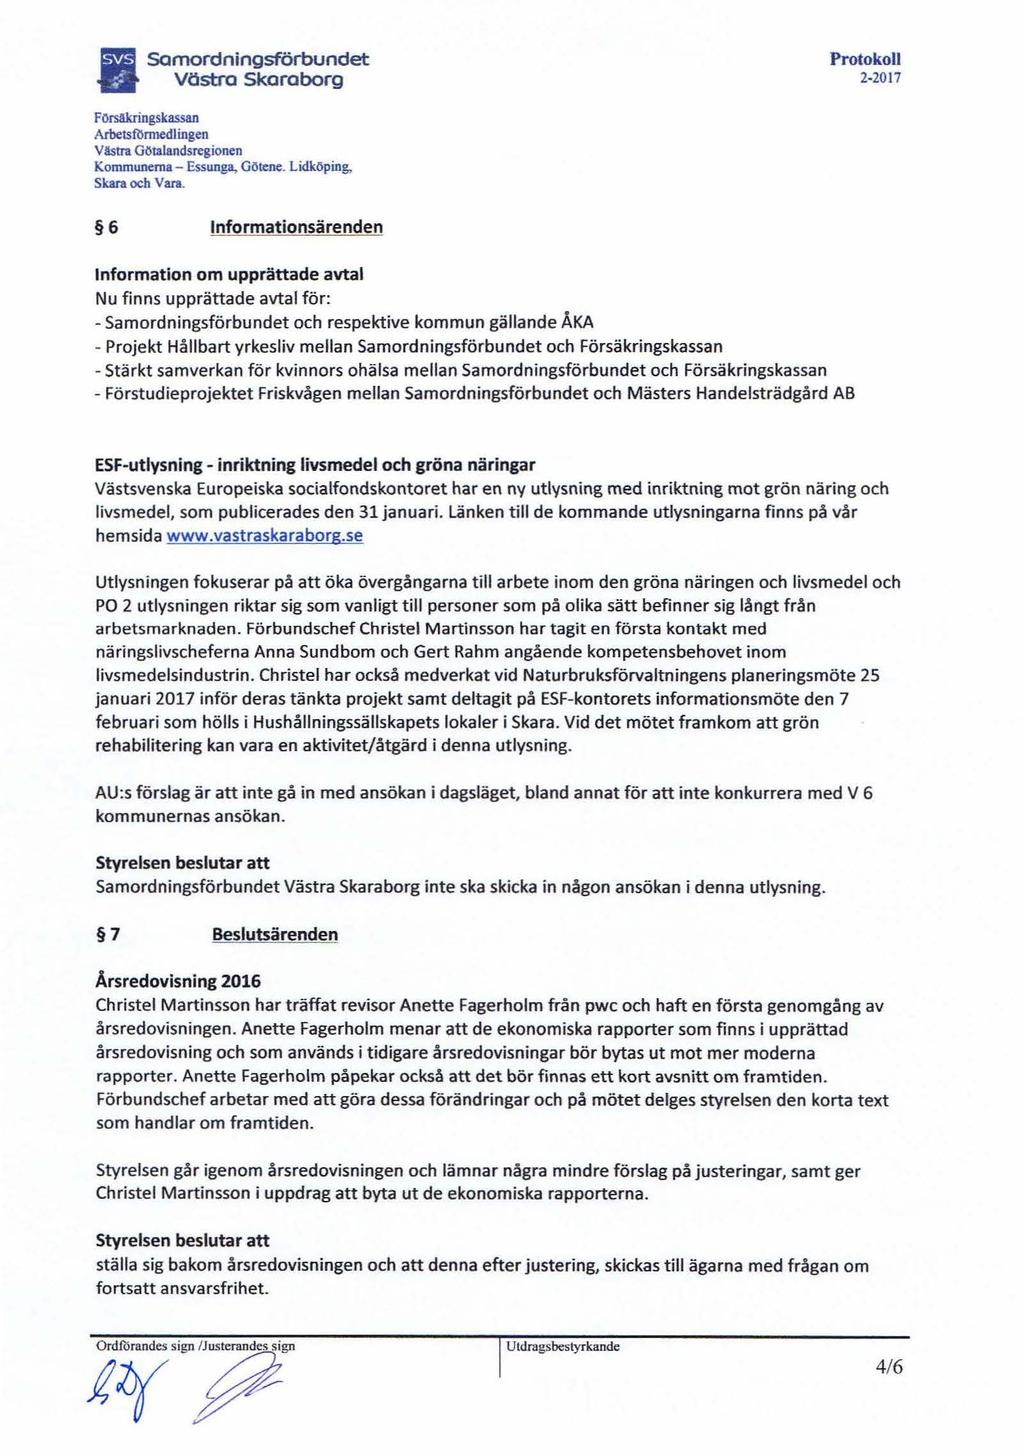 Samordningsförbundet Vöstra Skaraborg ProtokoU 2-2017 F Orsakringskassan Arbetsfilnnedlingen Västra Götalandsregionen Kommunerna - Essunga, Götene. Lidköping, Skara och Vara.